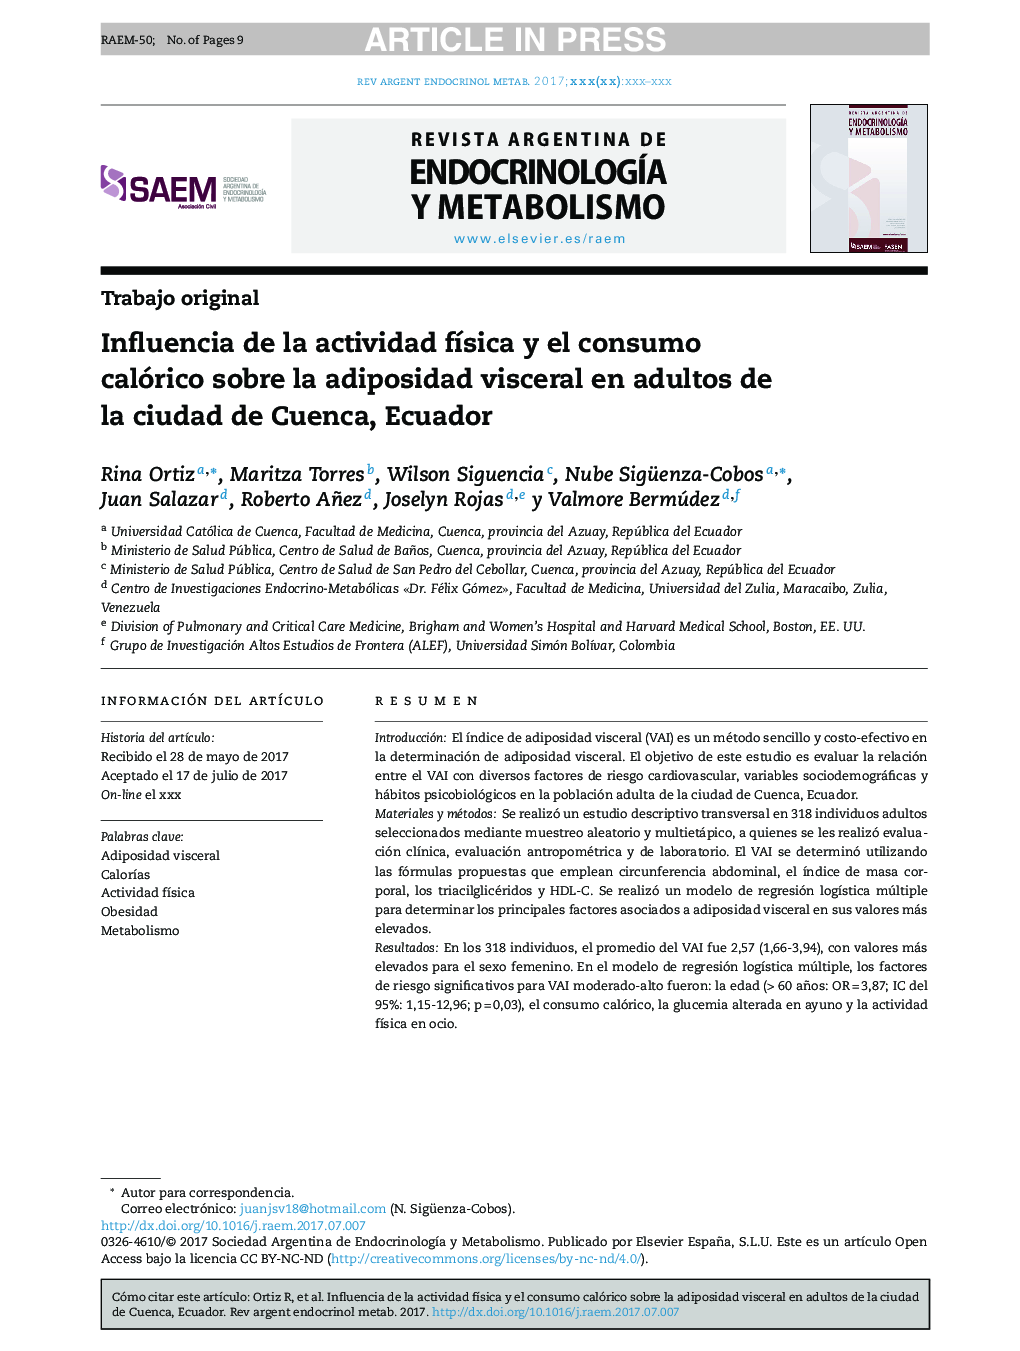 Influencia de la actividad fÃ­sica y el consumo calórico sobre la adiposidad visceral en adultos de la ciudad de Cuenca, Ecuador